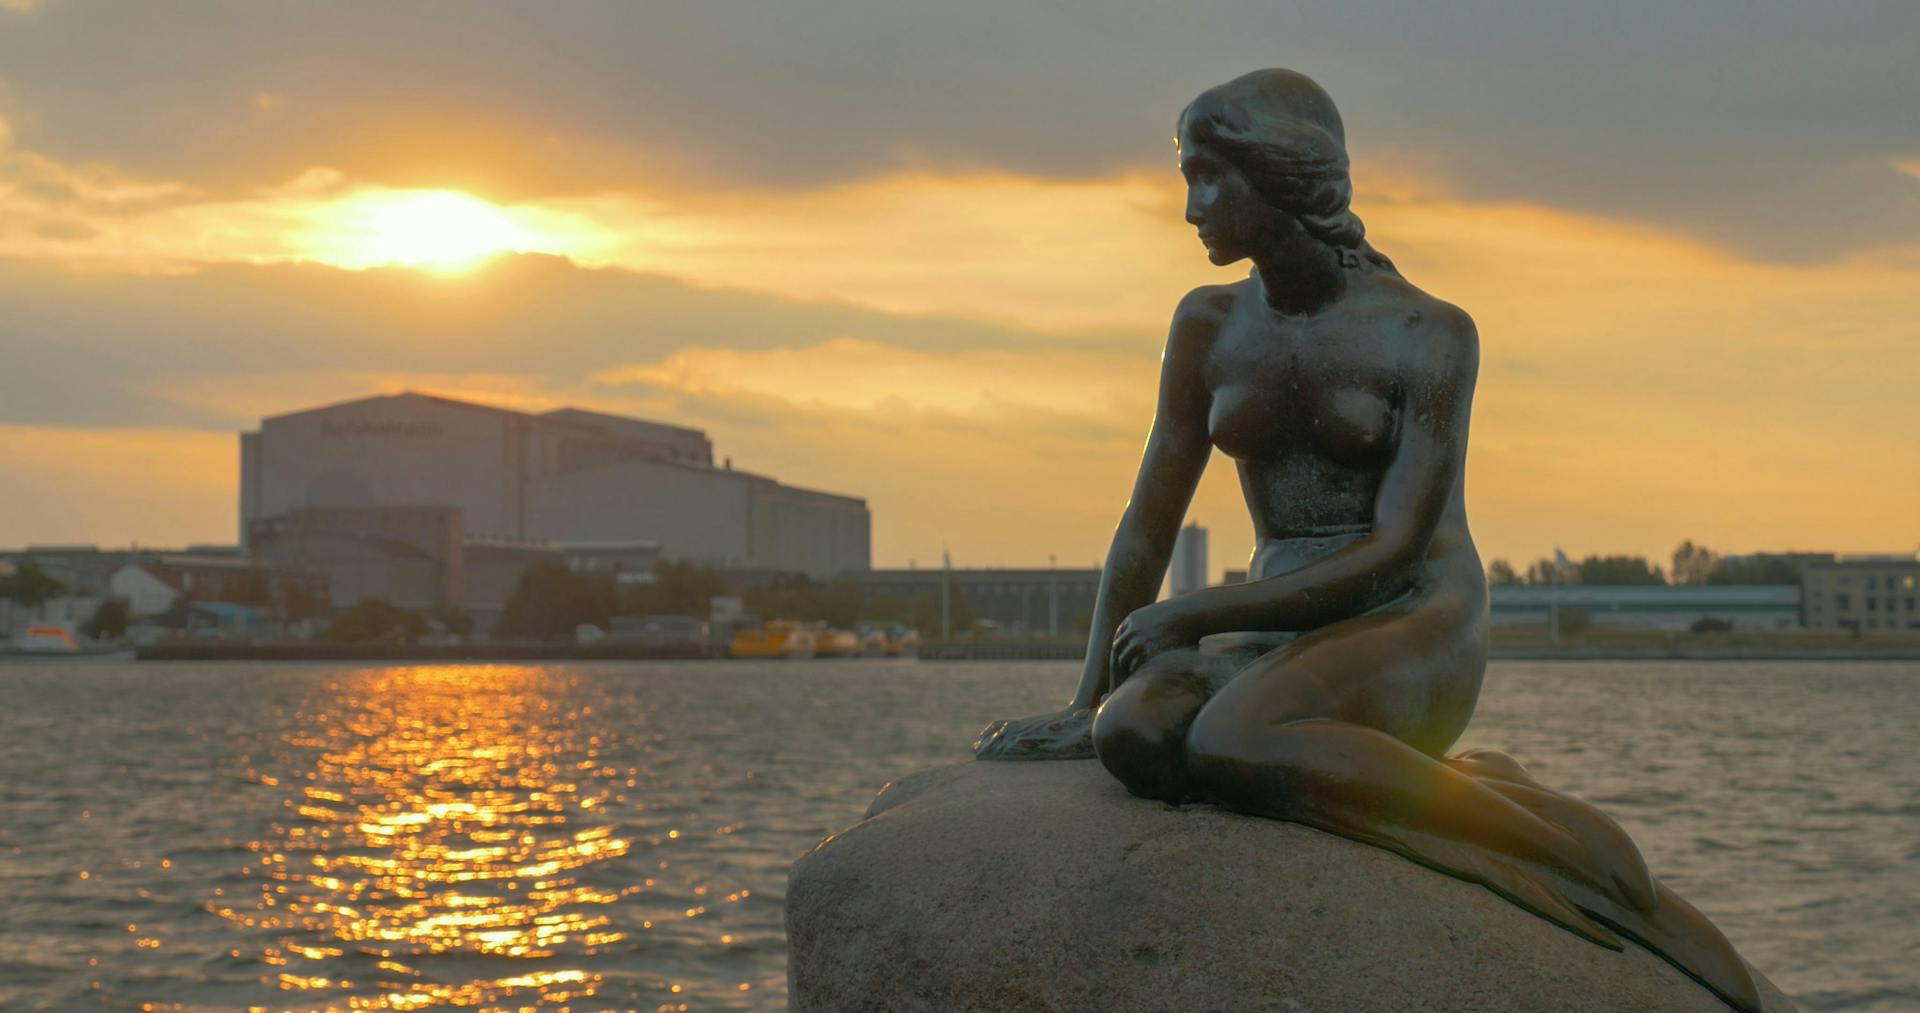 The little mermaid sculpture in Copenhagen. 